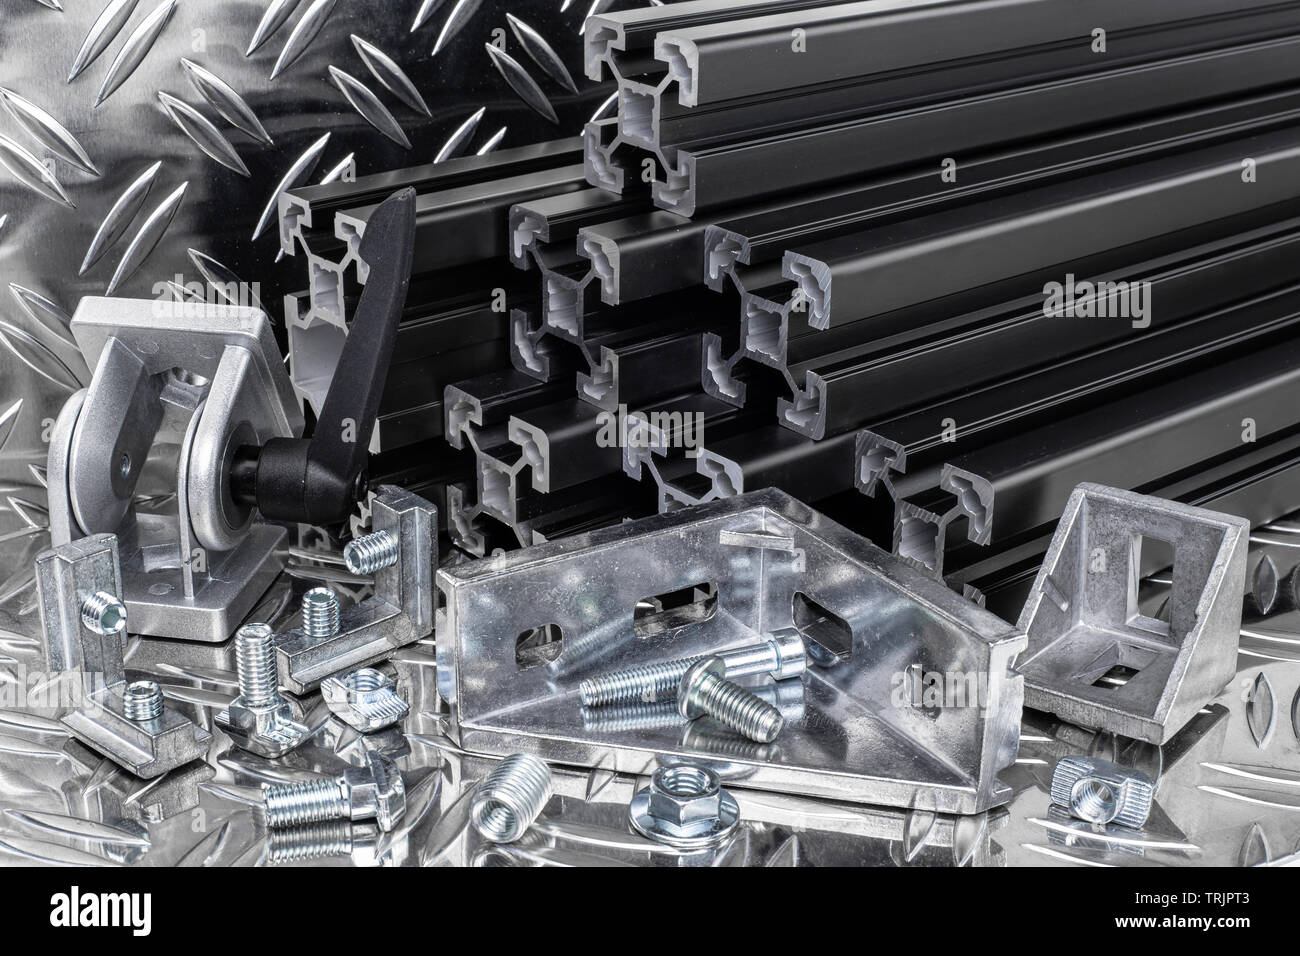 Stapel aus schwarz eloxiertem Aluminium Extrusion Bars, Stecker, Schraube, Mutter und Winkel auf Silber glänzend Diamant platte Hintergrund. Konstr Stockfoto